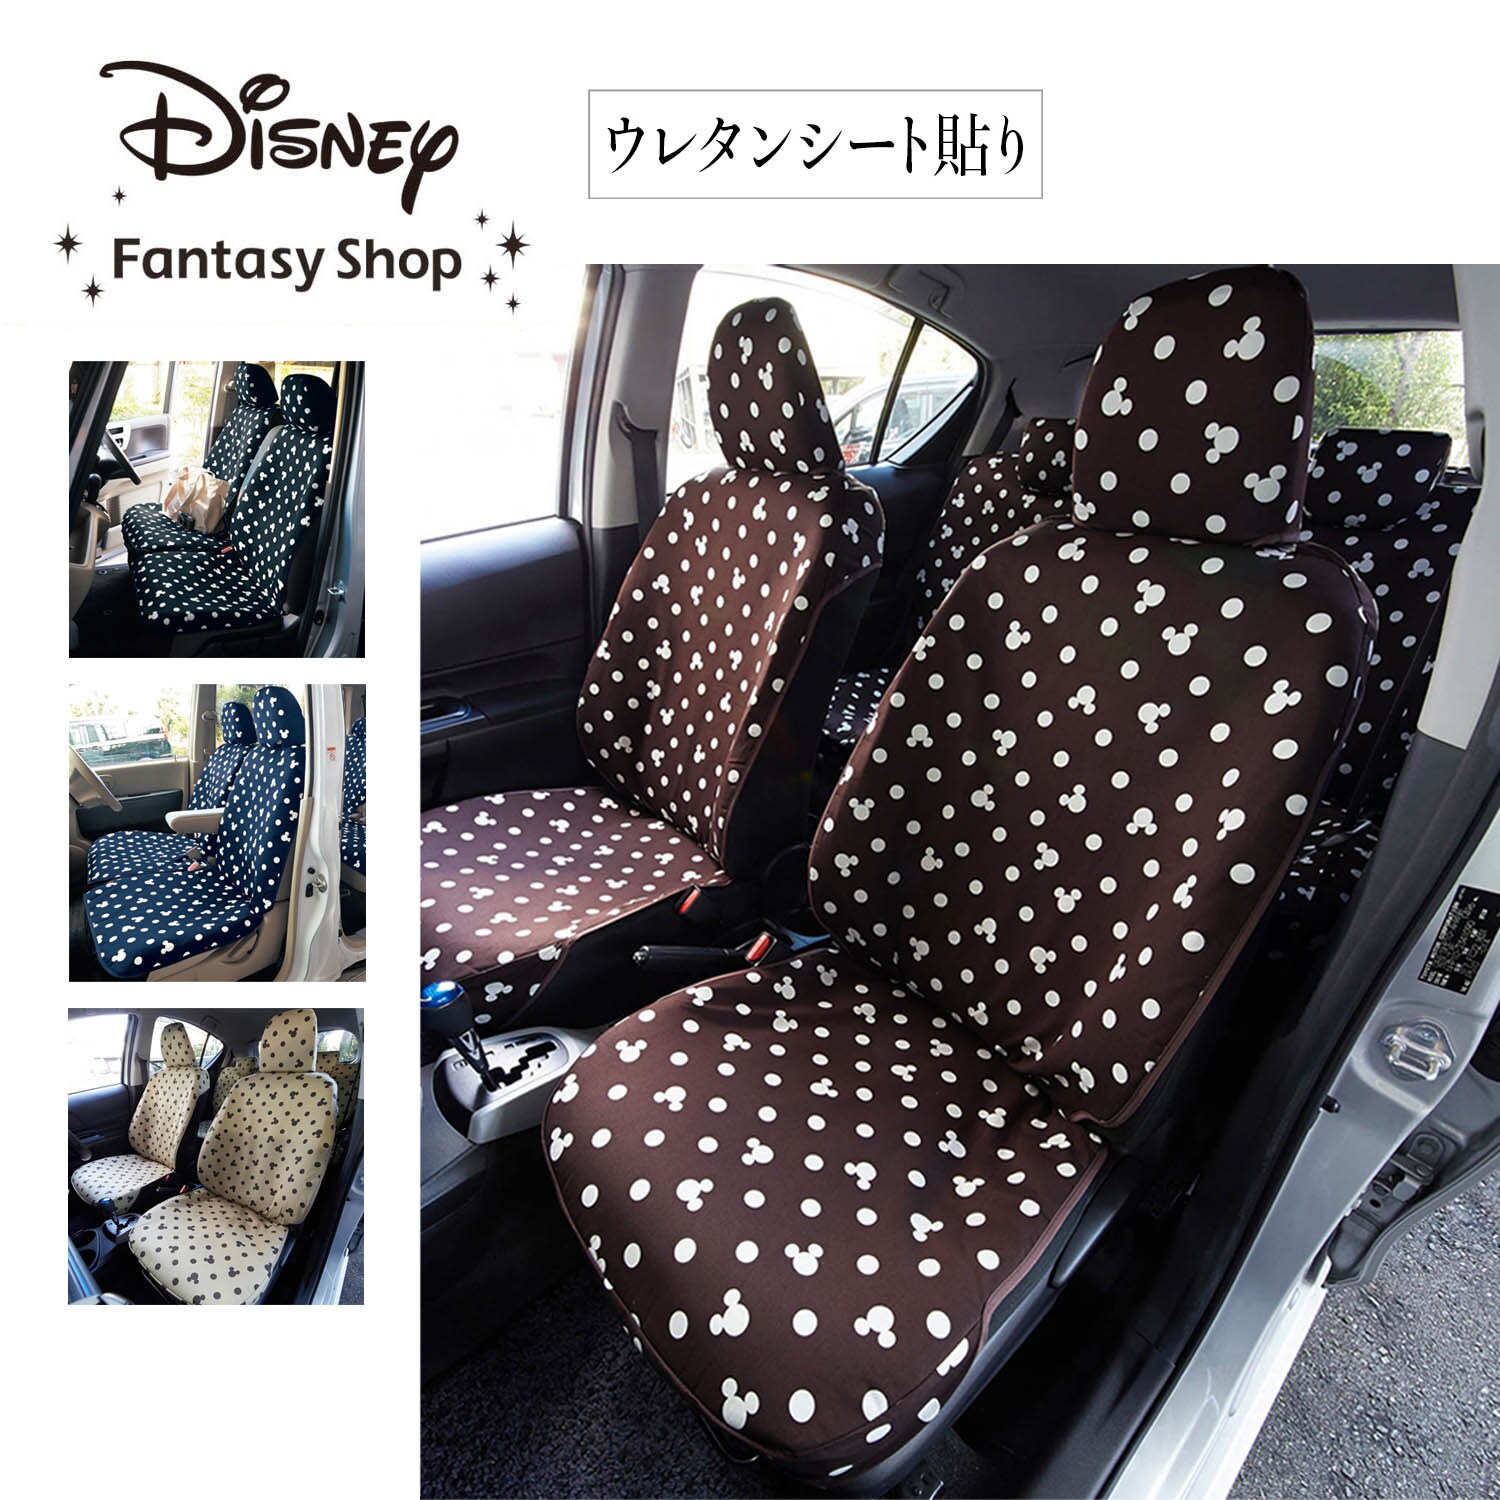 【ディズニー/Disney】ウレタンシート貼りの車種専用カーシートカバーセット[日本製]「ミッキーモチーフ」